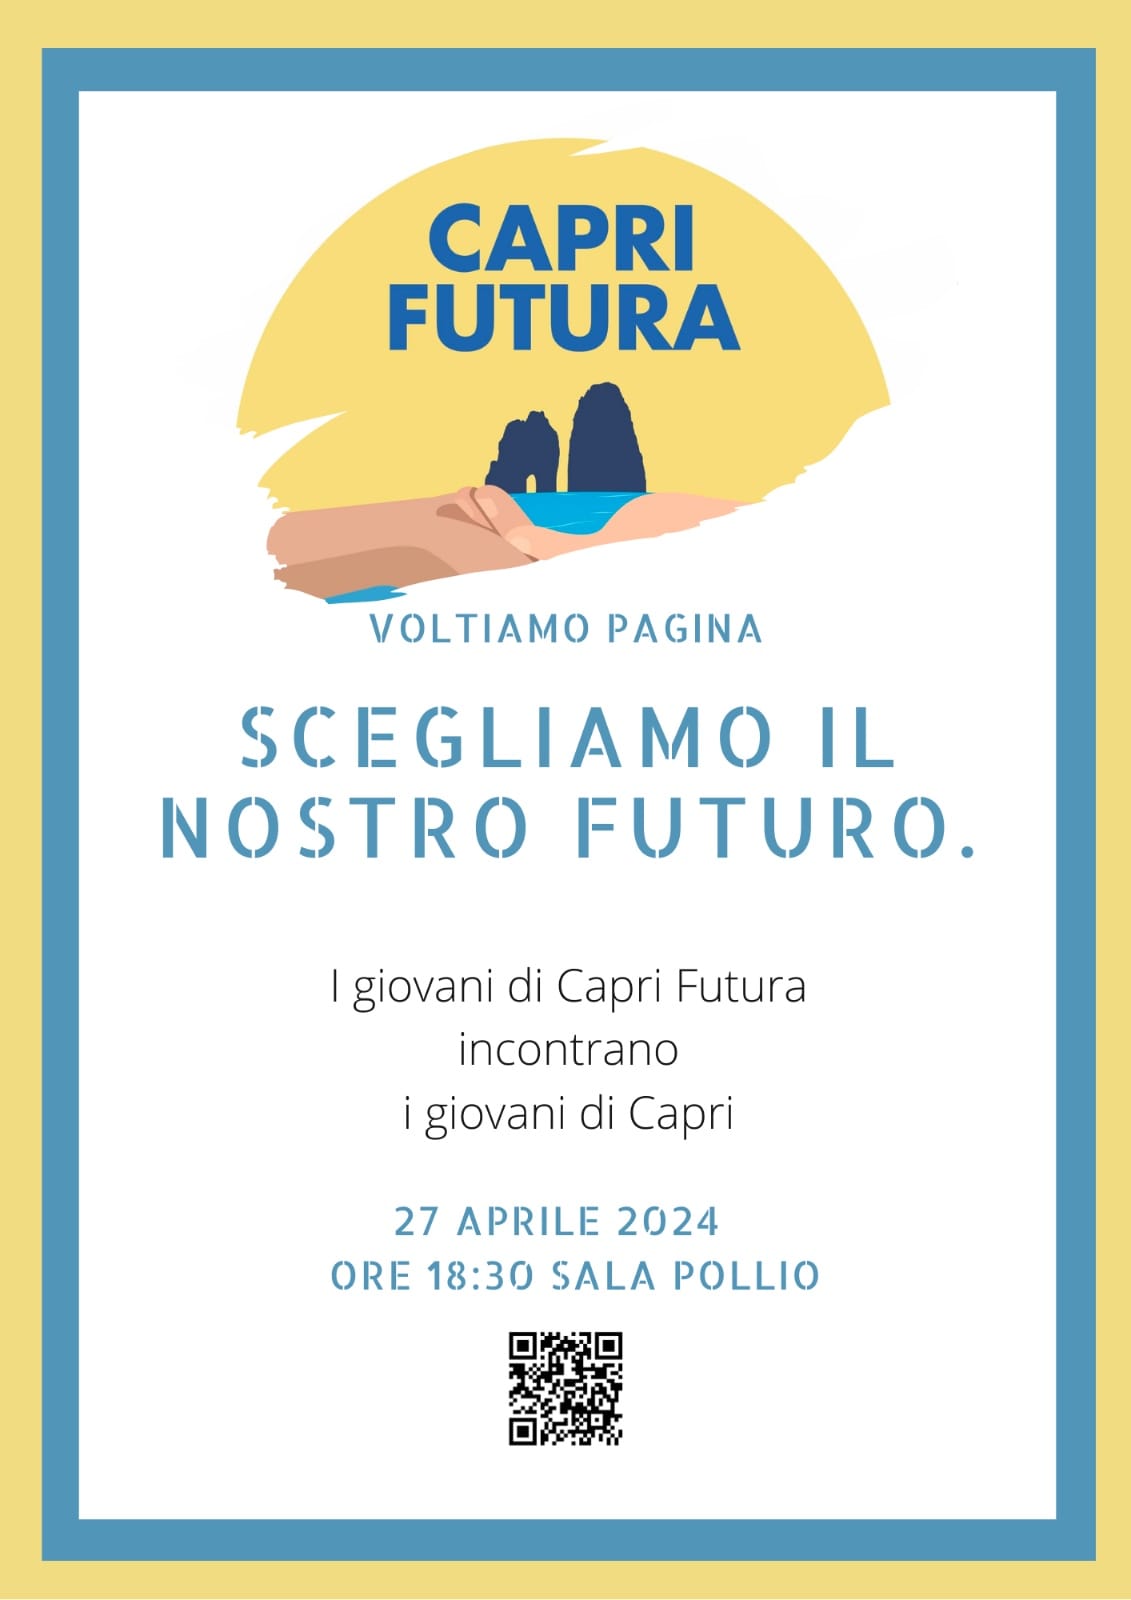 I giovani di Capri Futura incontrano i giovani di Capri: alla Sala Pollio l’iniziativa dal titolo “Scegliamo il nostro futuro”